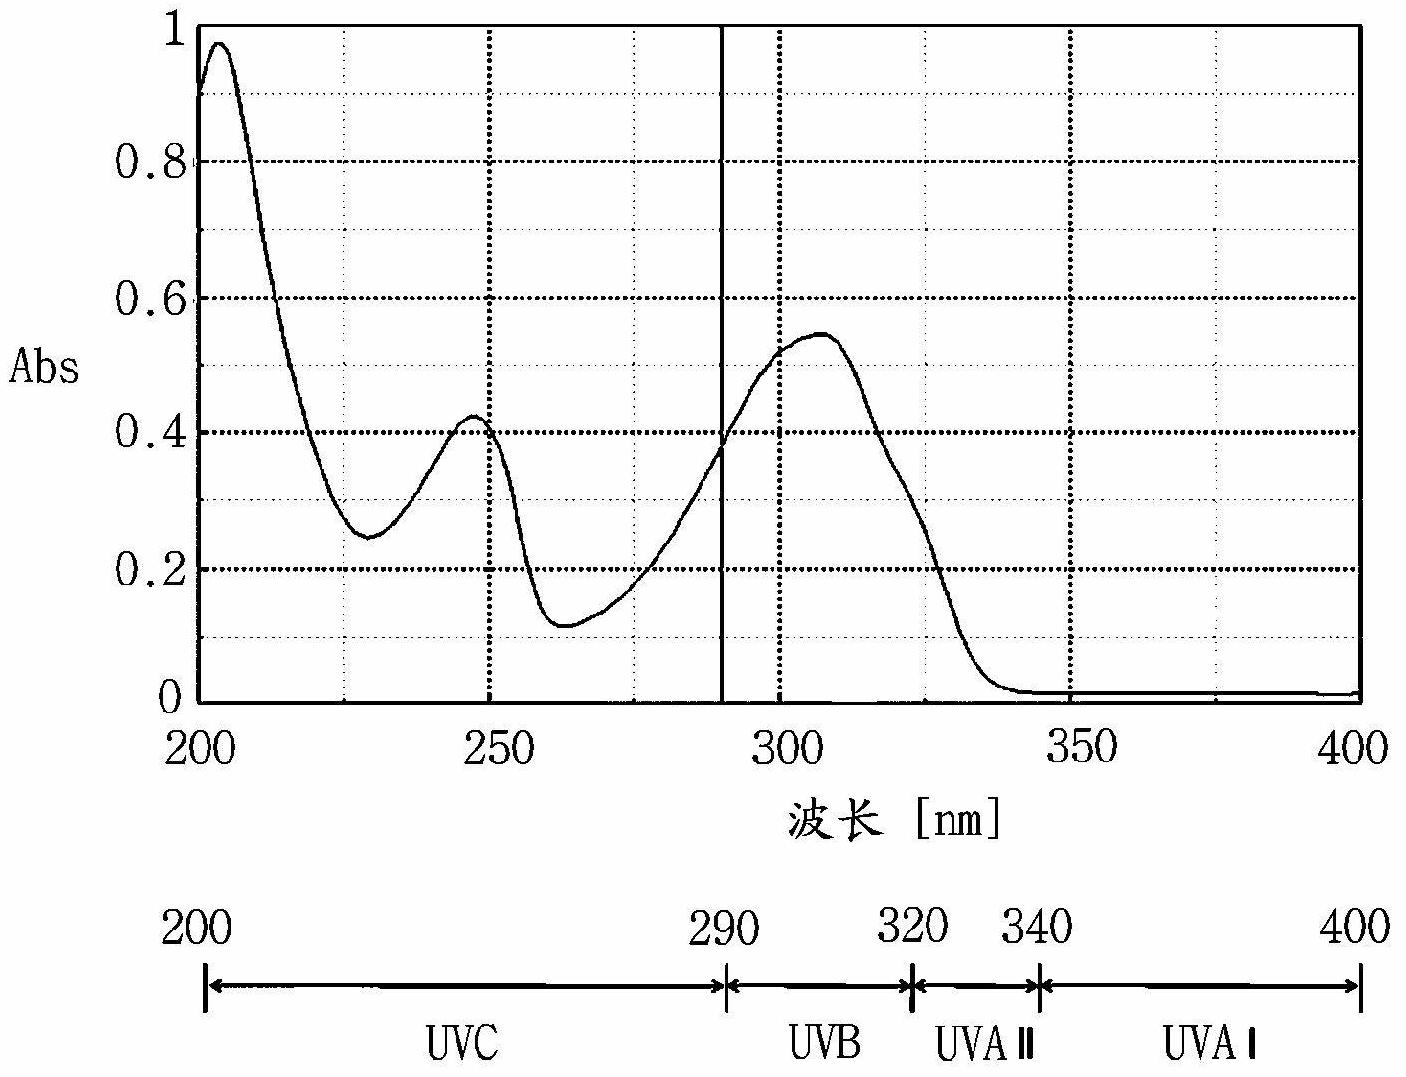 Composition for blocking ultraviolet C (UV-C) radiation